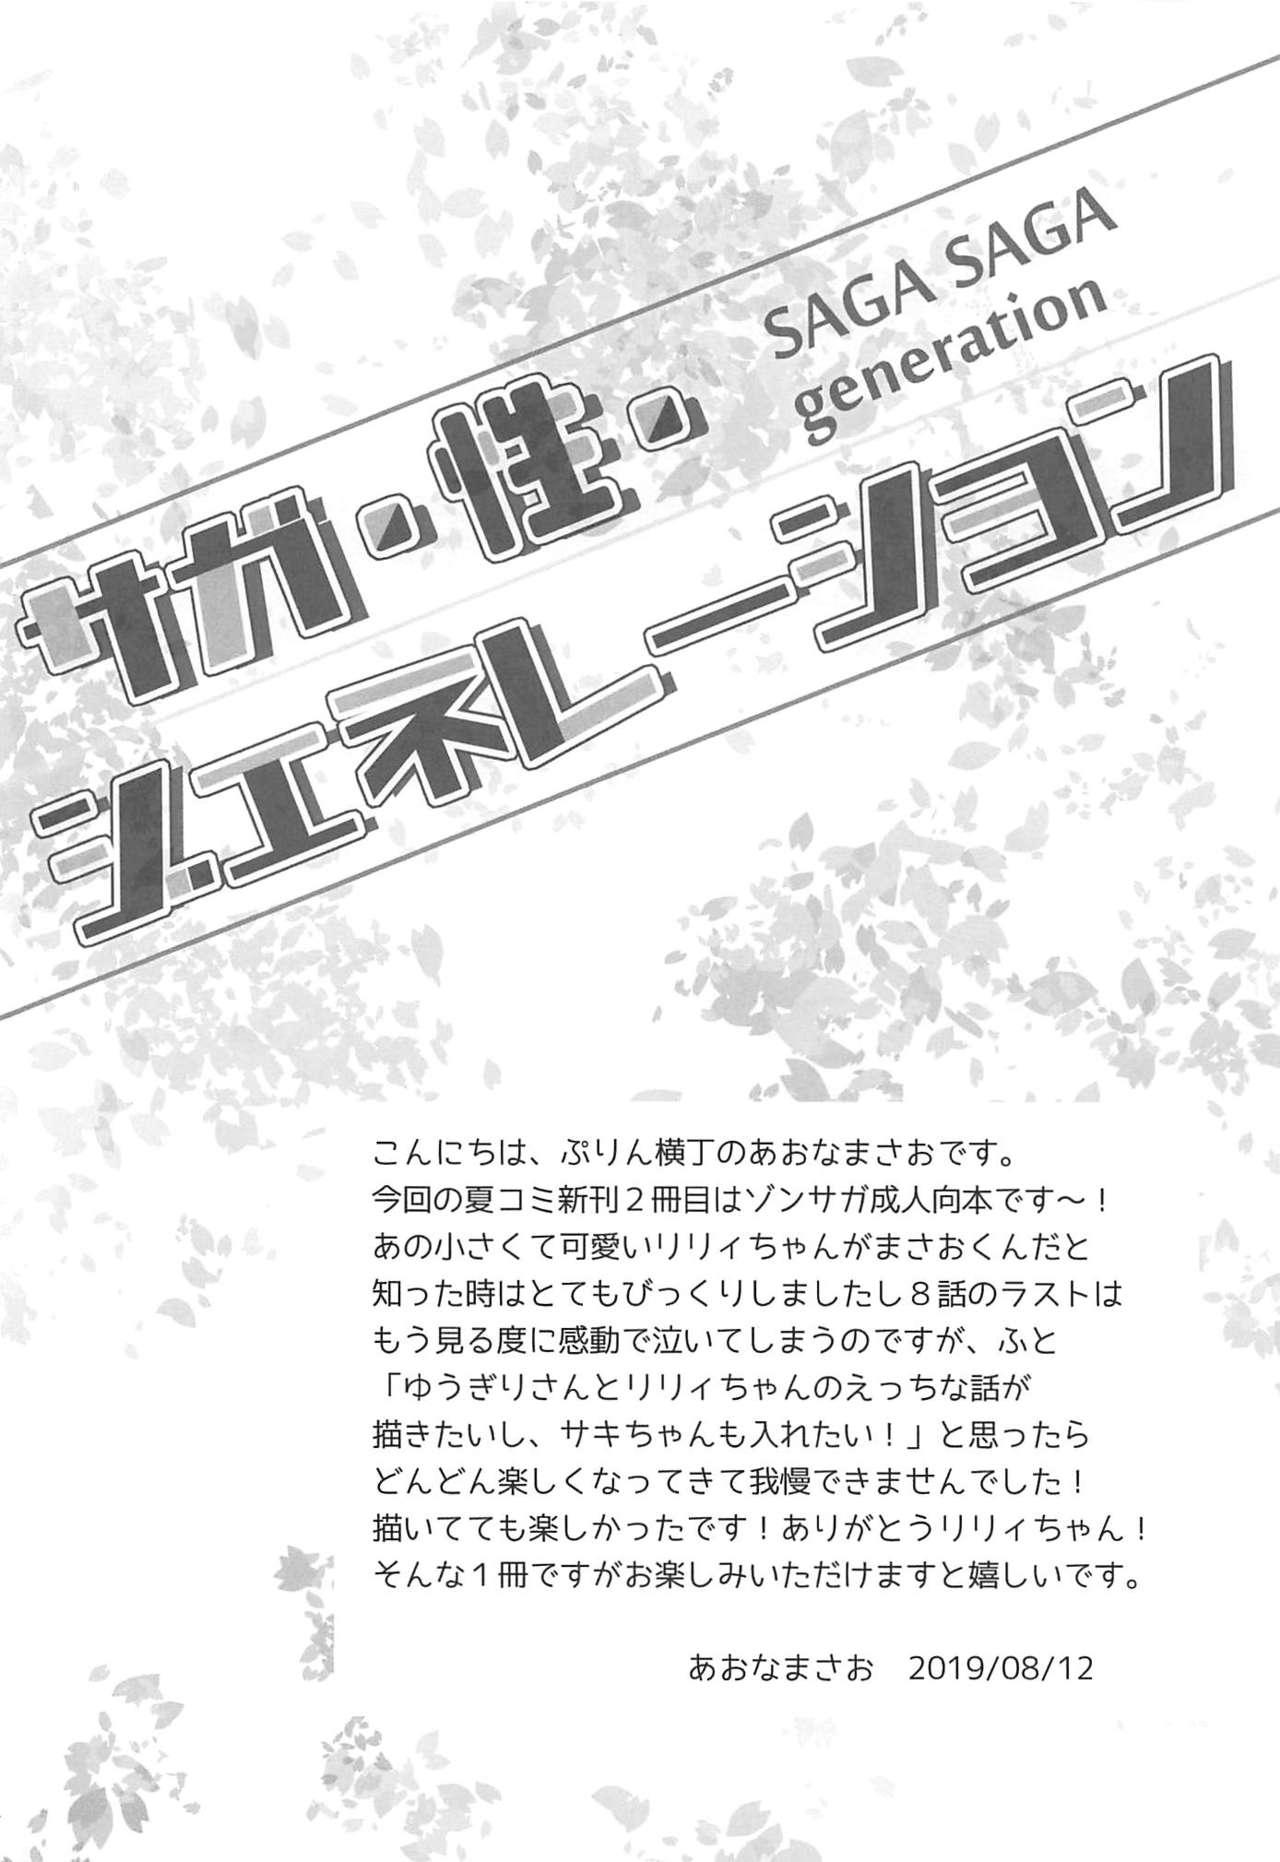 Step Fantasy SAGA SAGA generation - Zombie land saga Muscular - Page 3